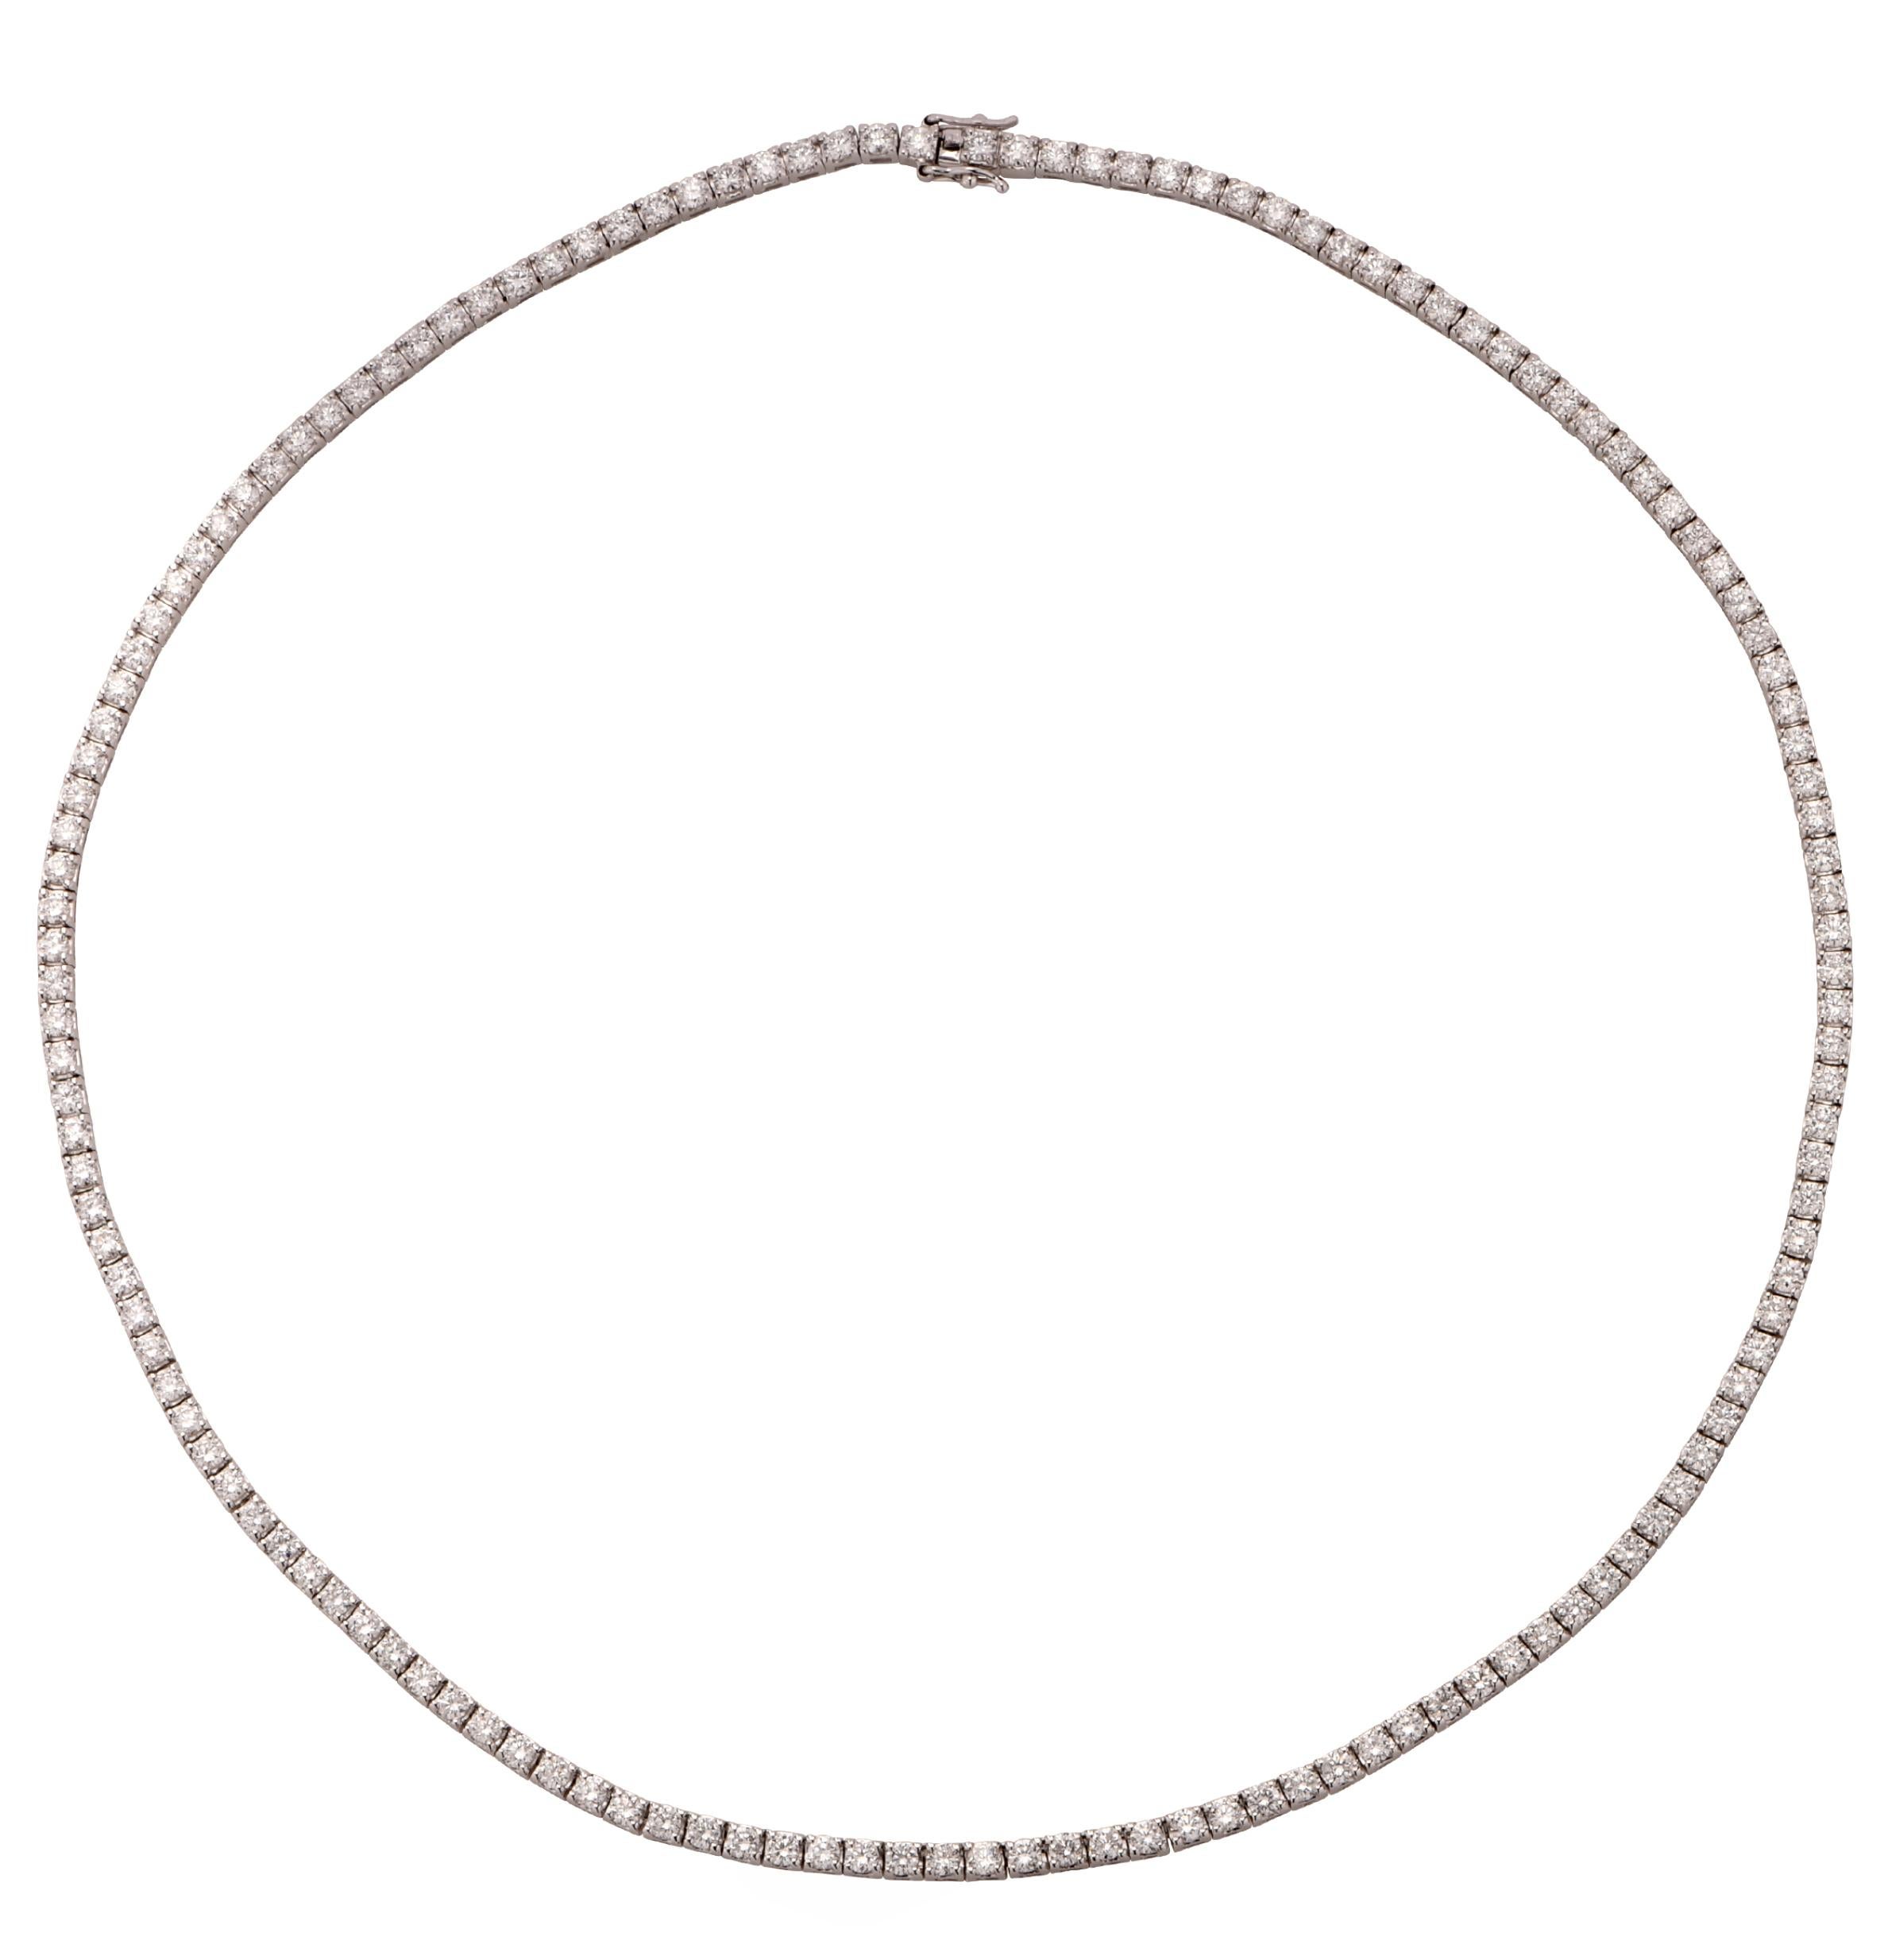 7.15 Carat Diamond Necklace